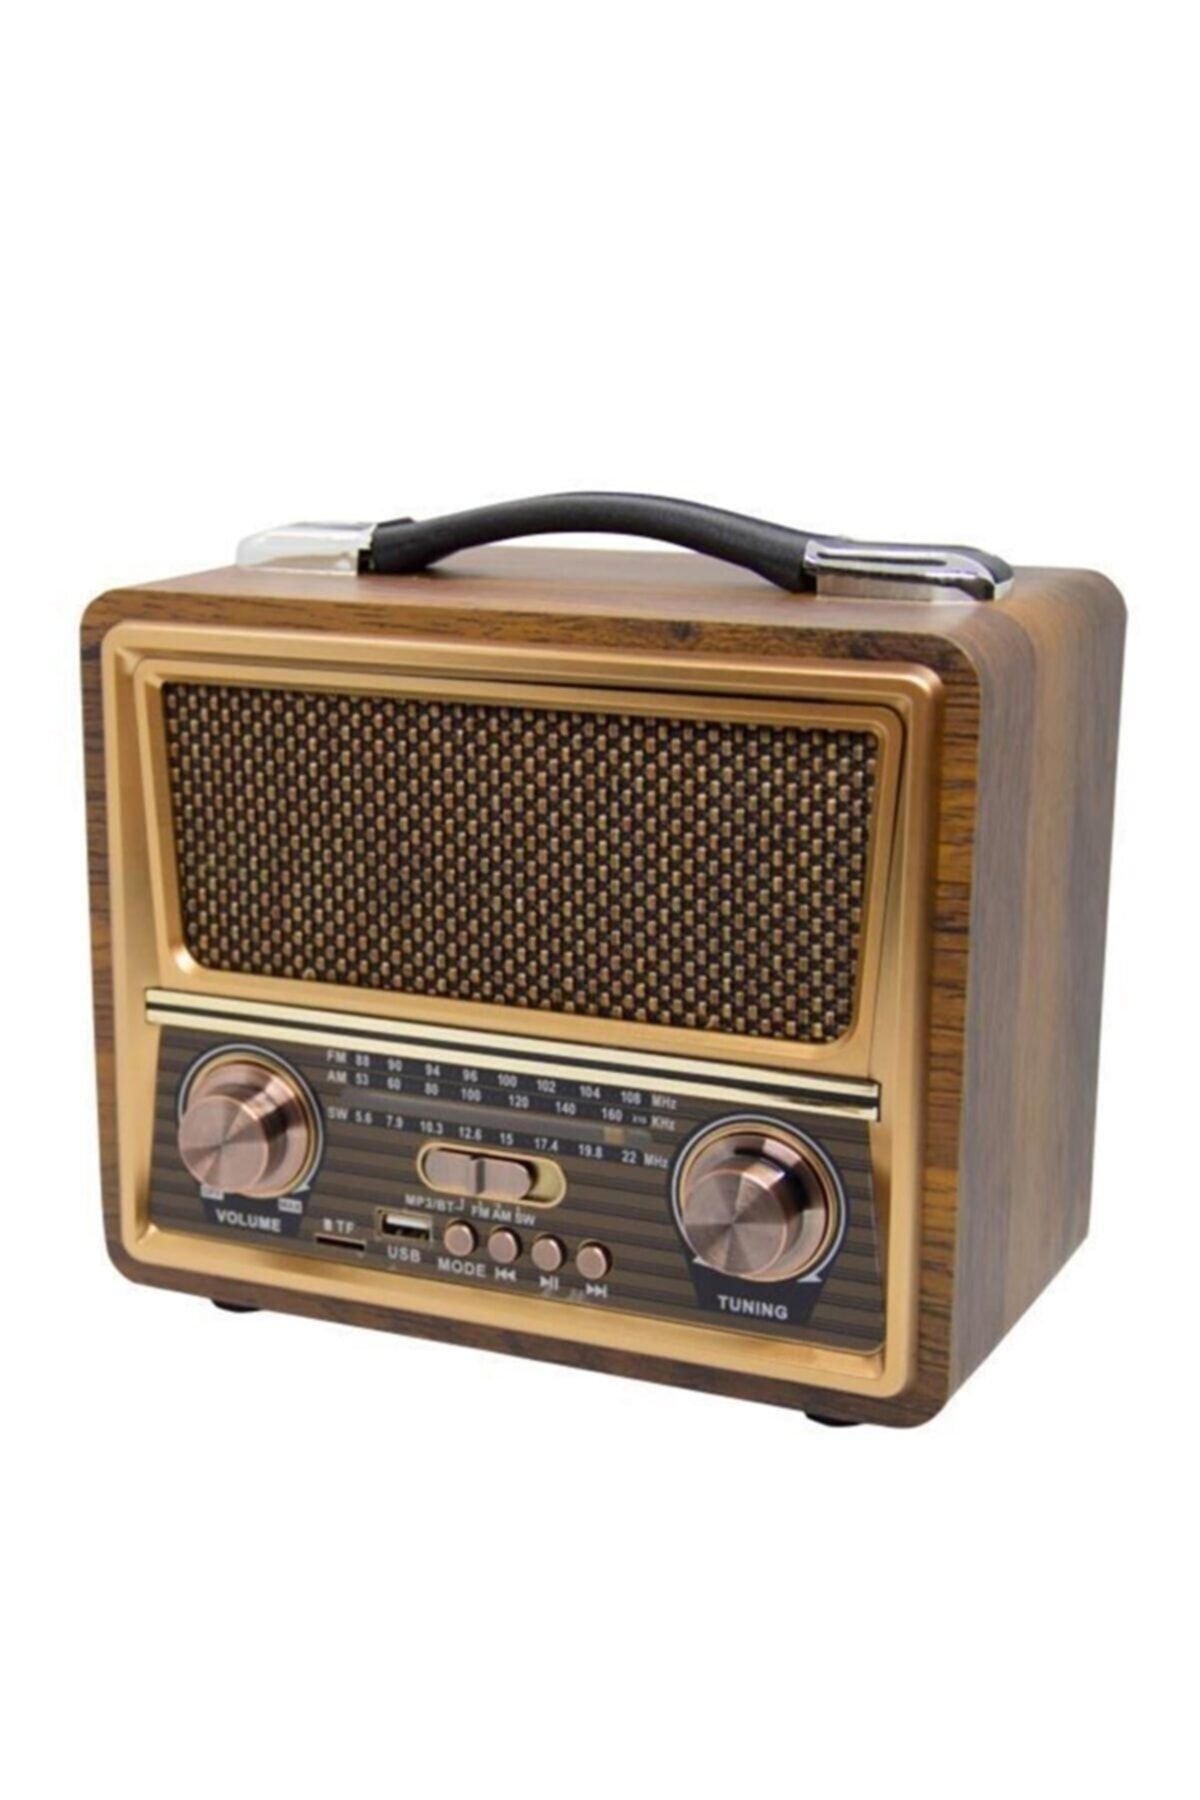 gaman Bluetoothlu Nostaljik Radyo Sd/usb/fm/şarjlı  Rt-821